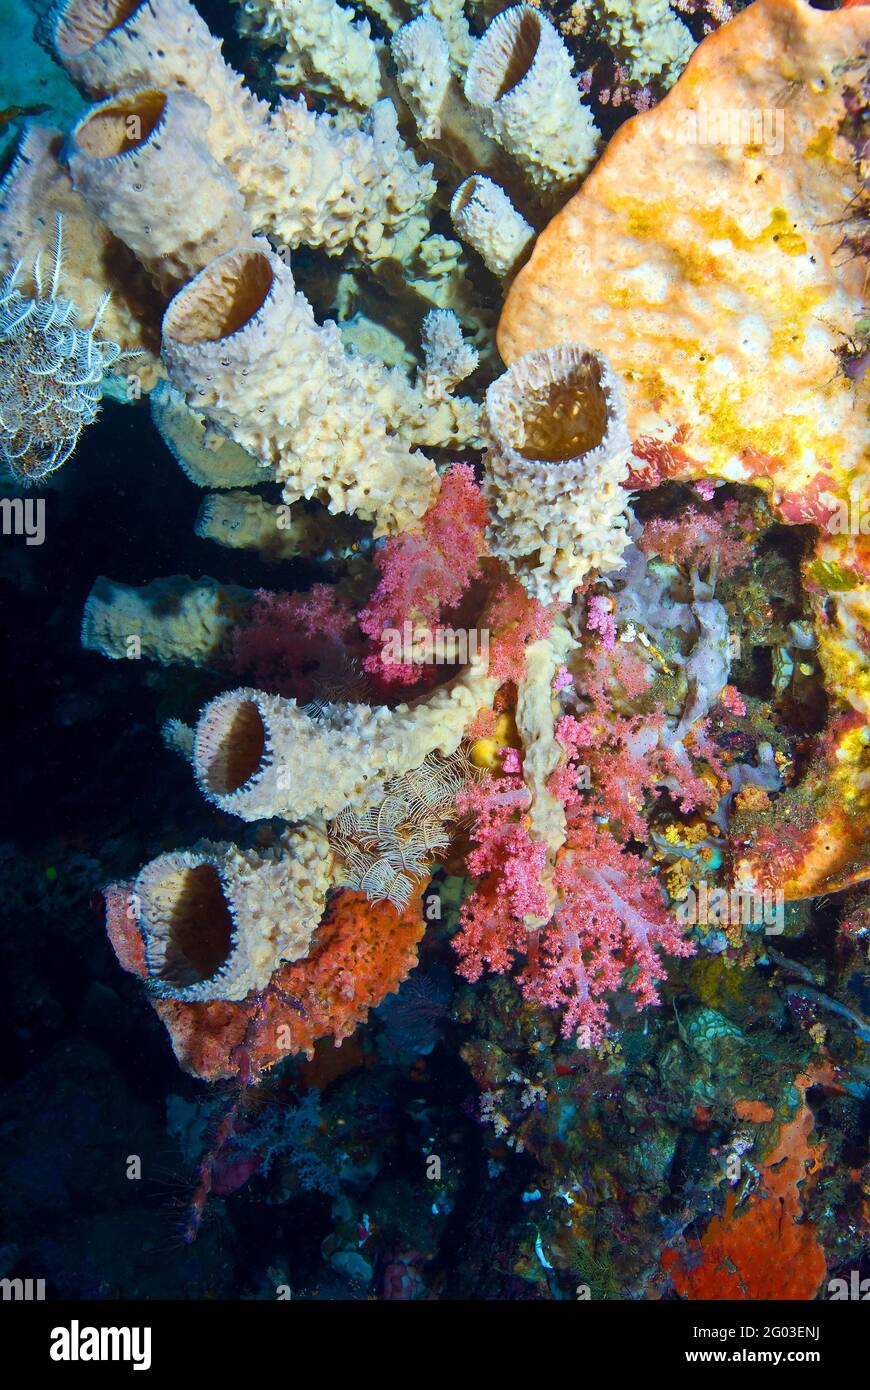 Enchevêtrement d'éponges tubulaires et de corail rouge doux, Parc national de Bunaken Manado Tua, Sulawesi, Indonésie Banque D'Images